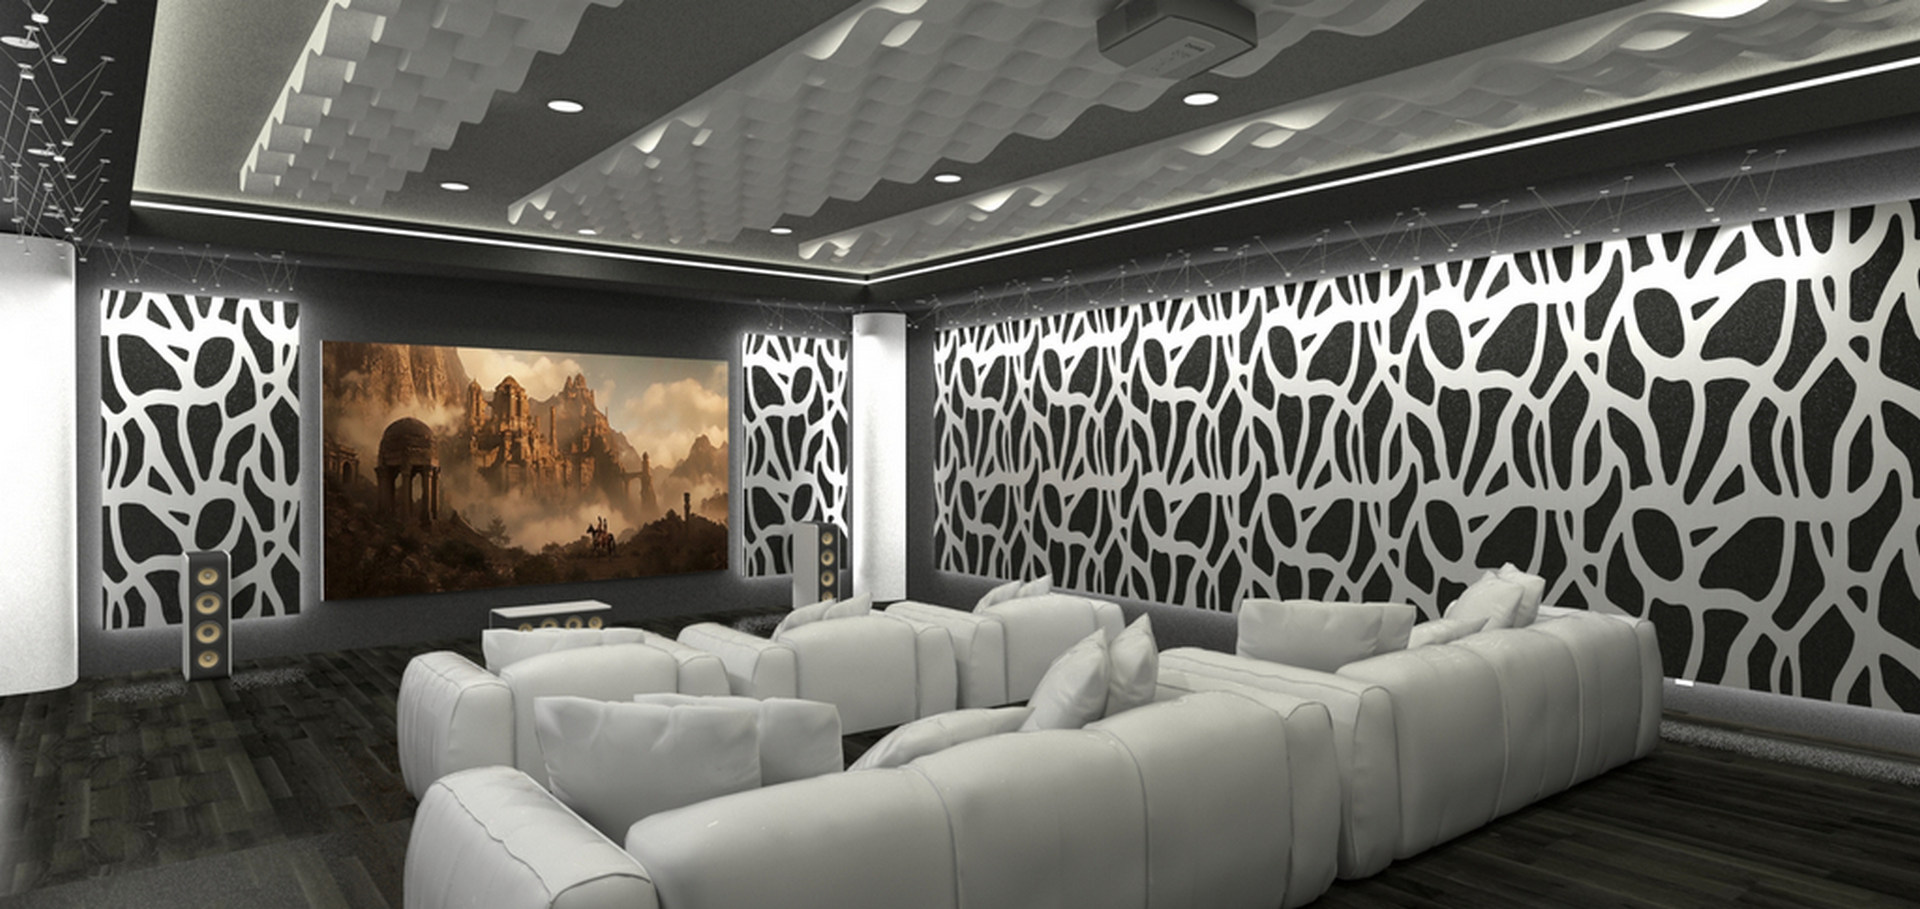 Ejemplo de sala diseñada con paneles acústicos decorativos